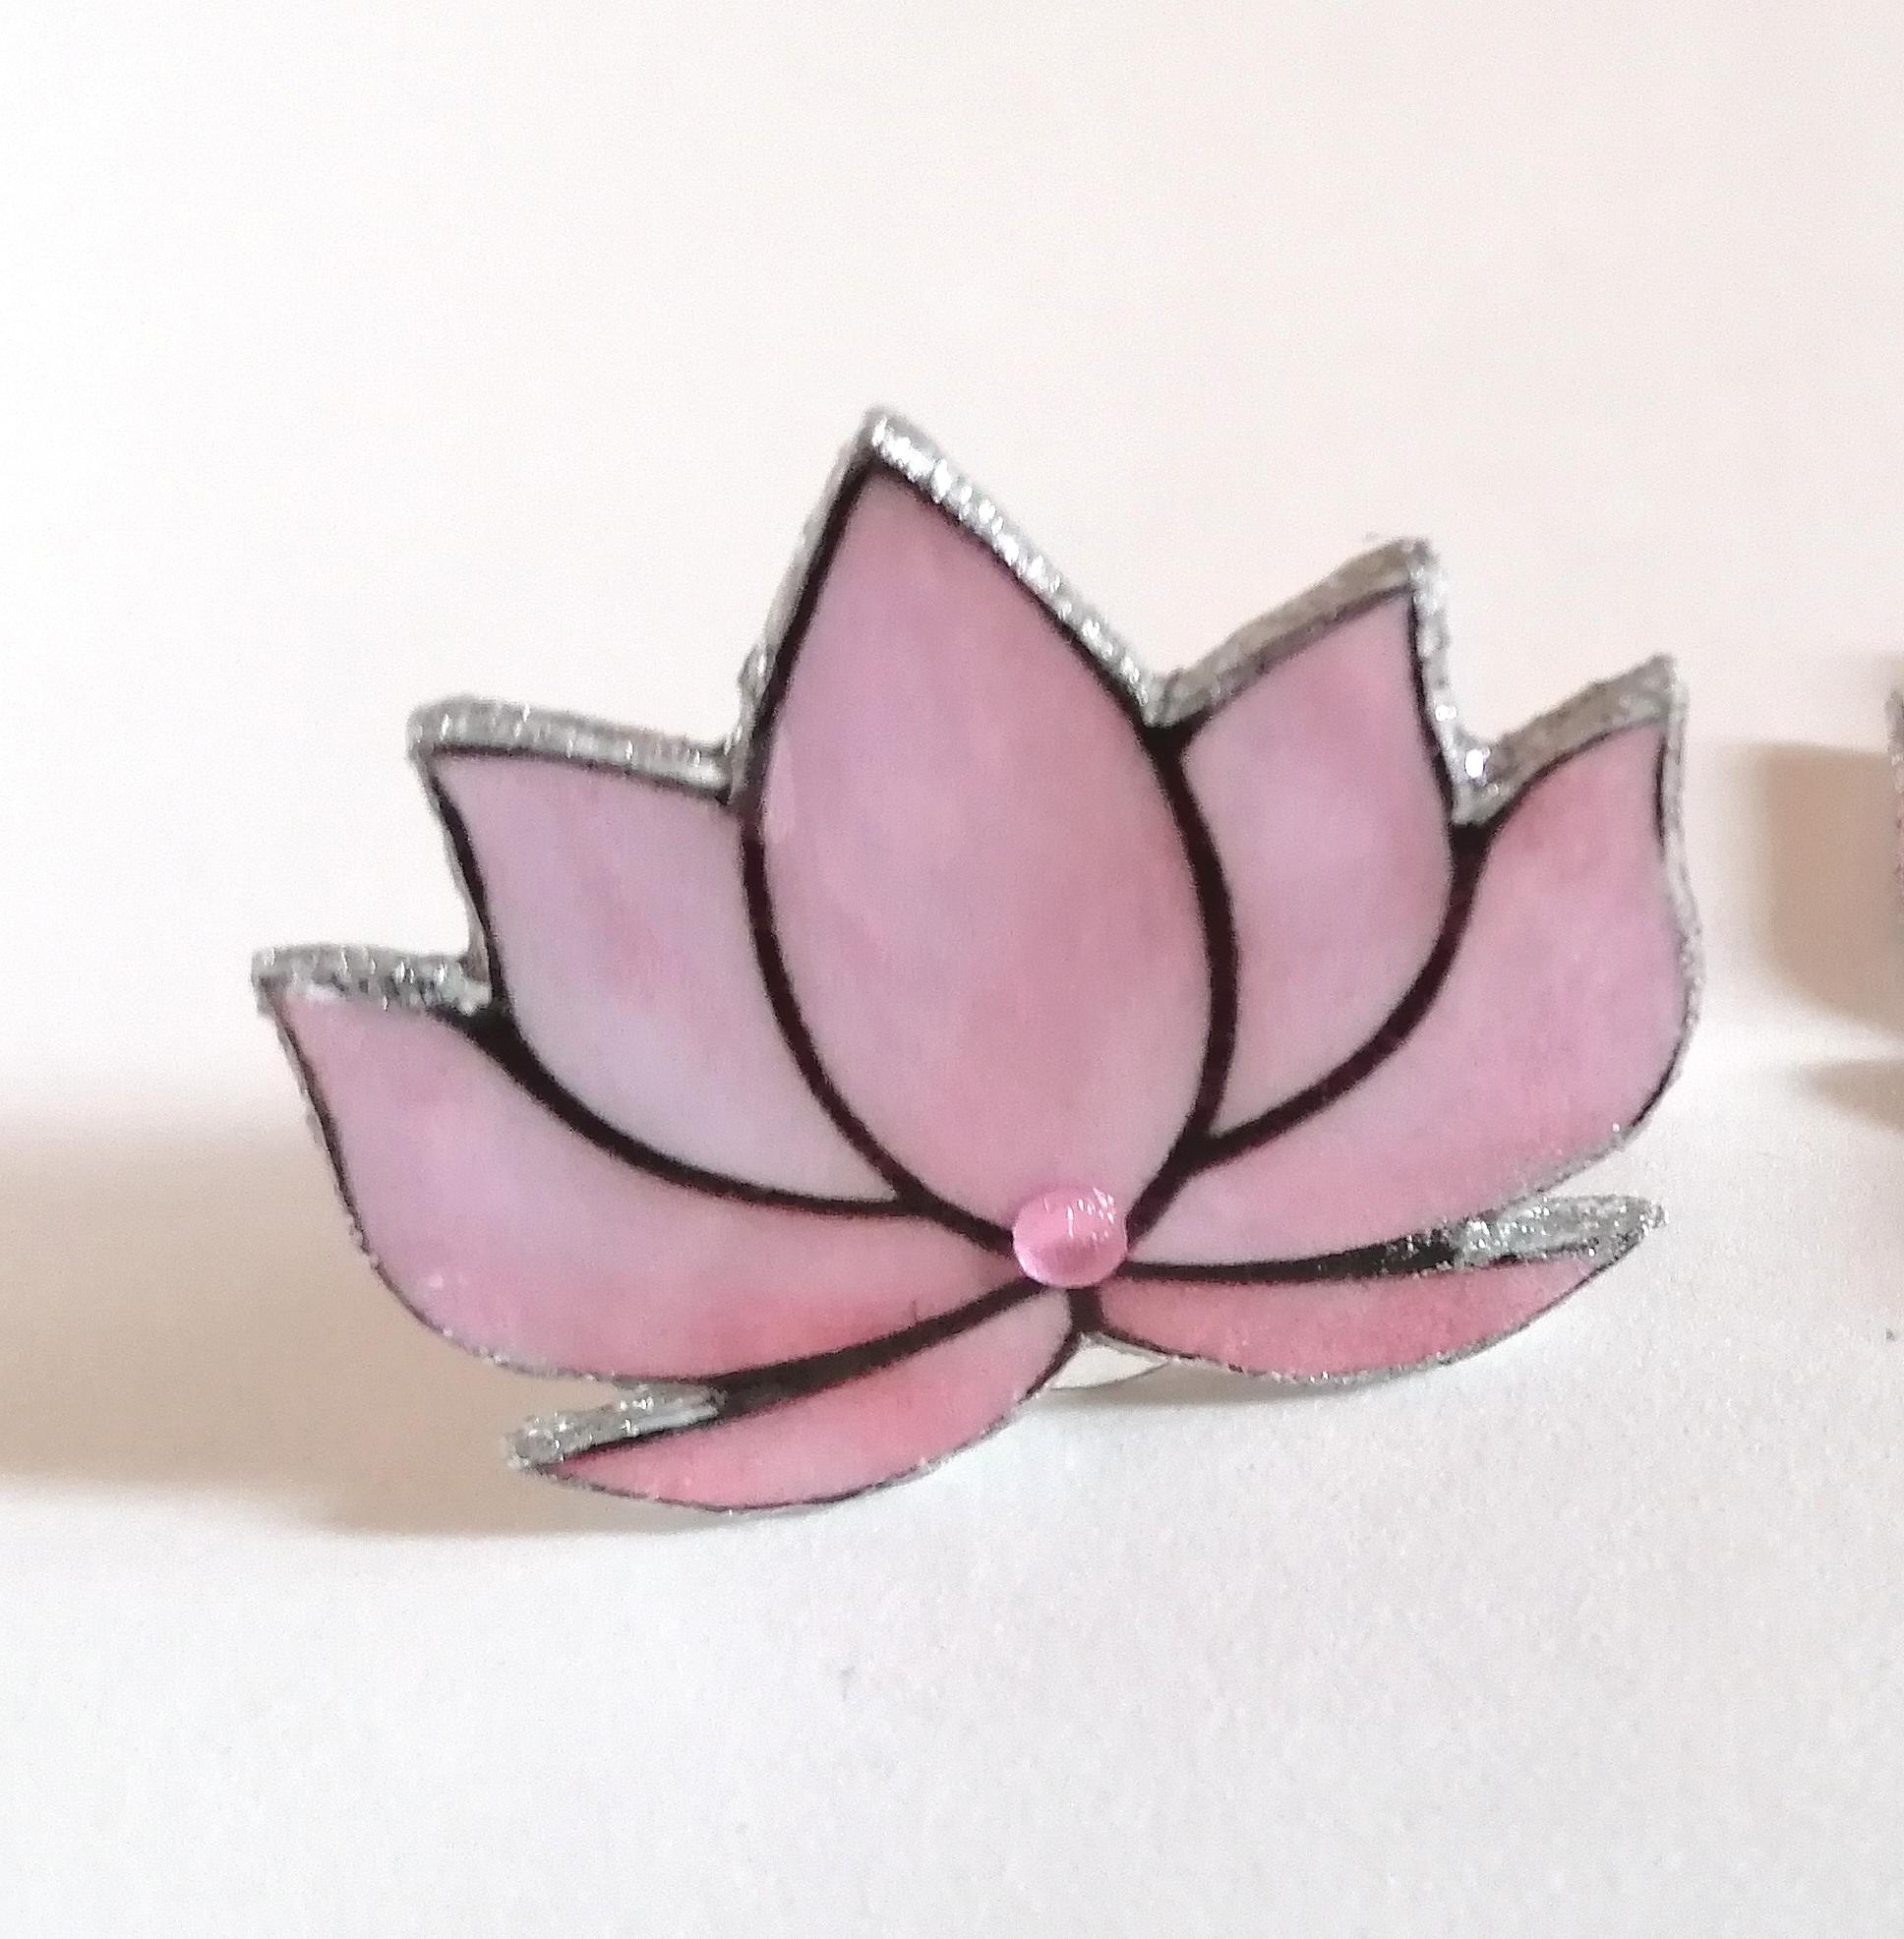 Lotus flower ring